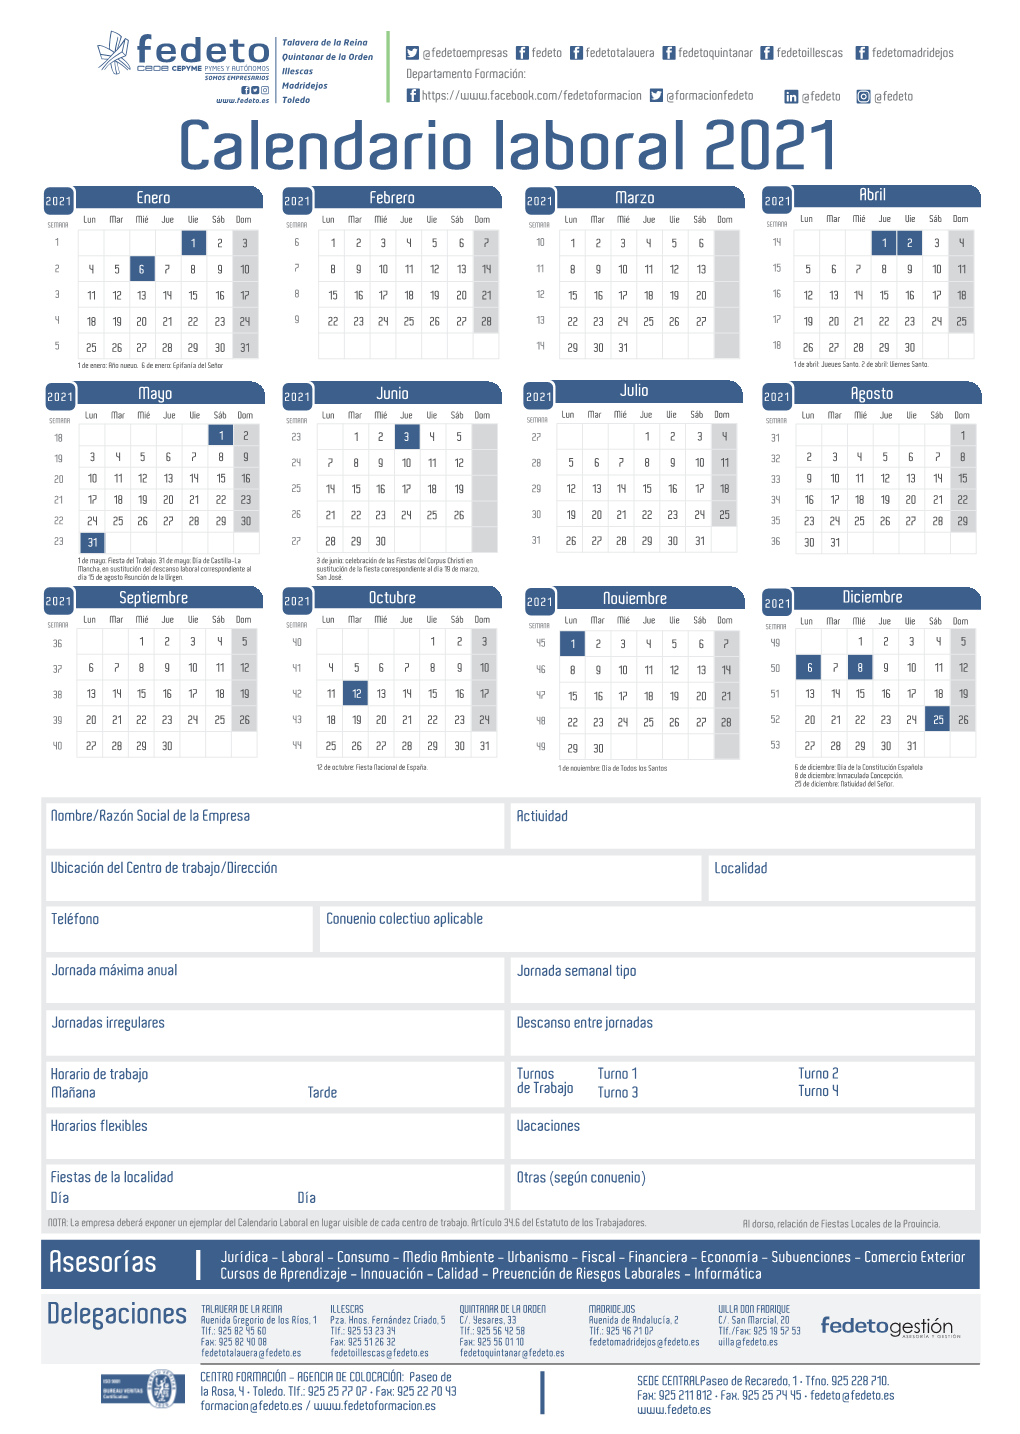 Fedeto Calendario Laboral 2021